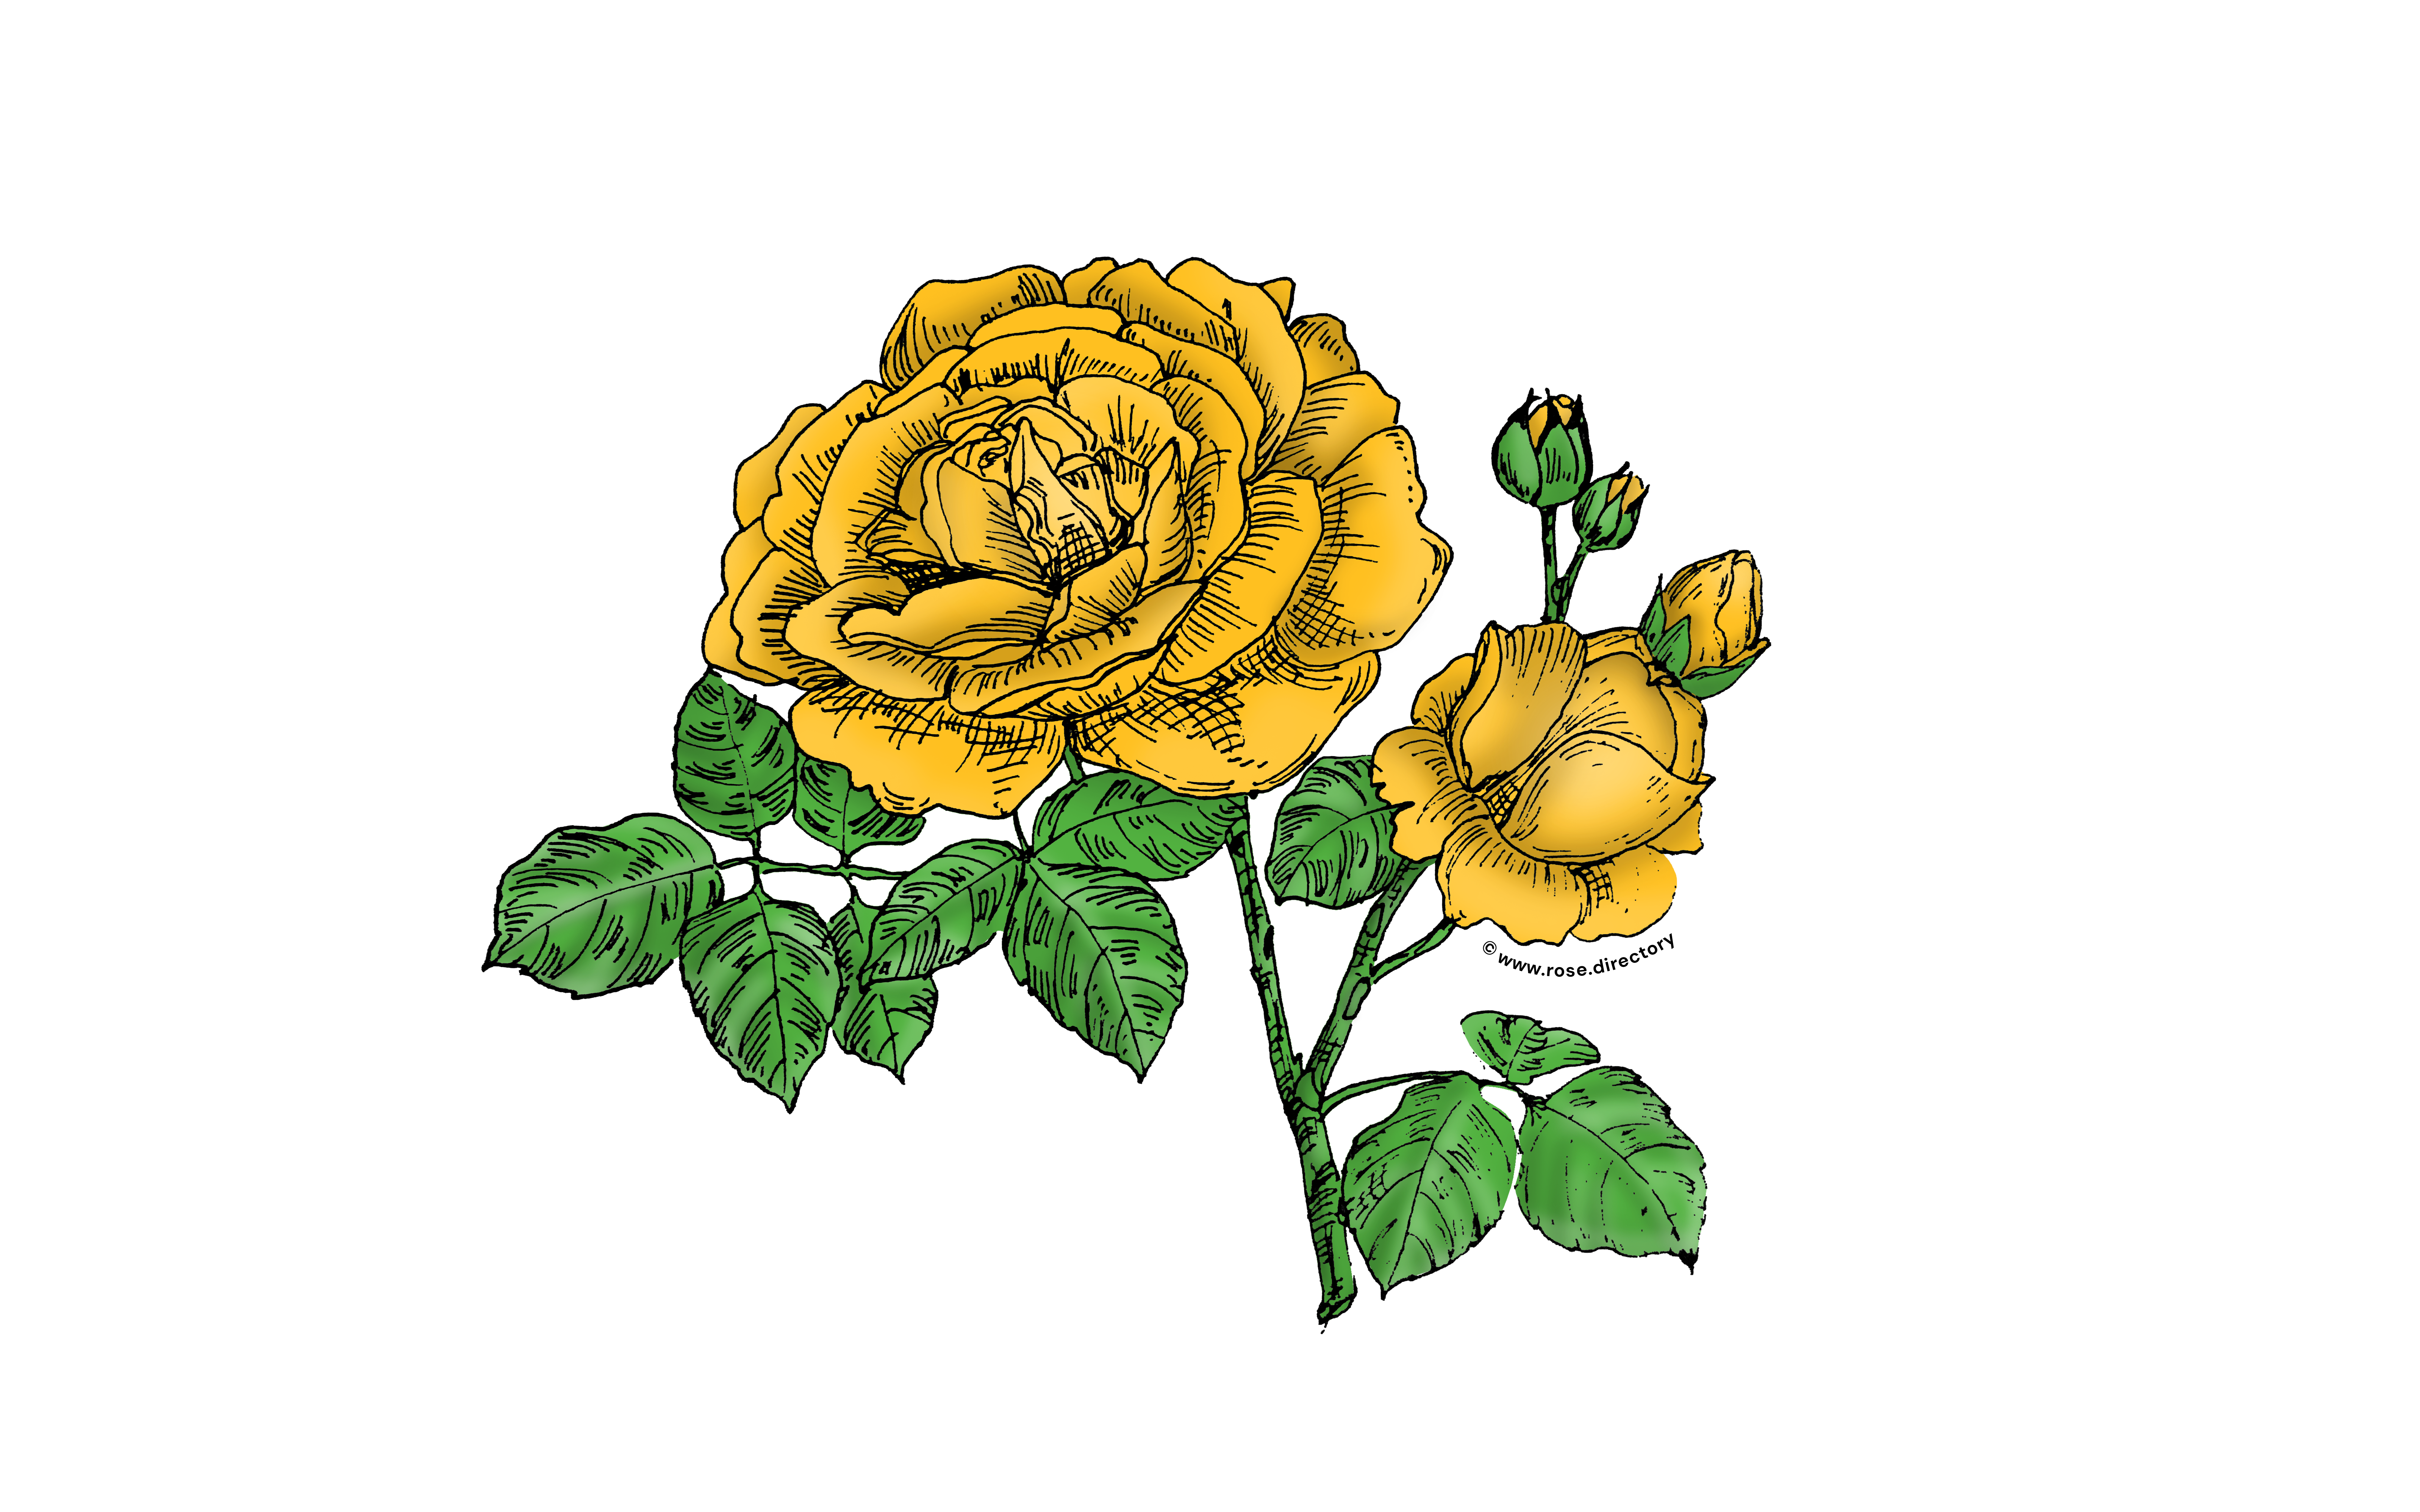 Yellow Globular Rose Bloom Full 26-40 Petals In 3+ Rows